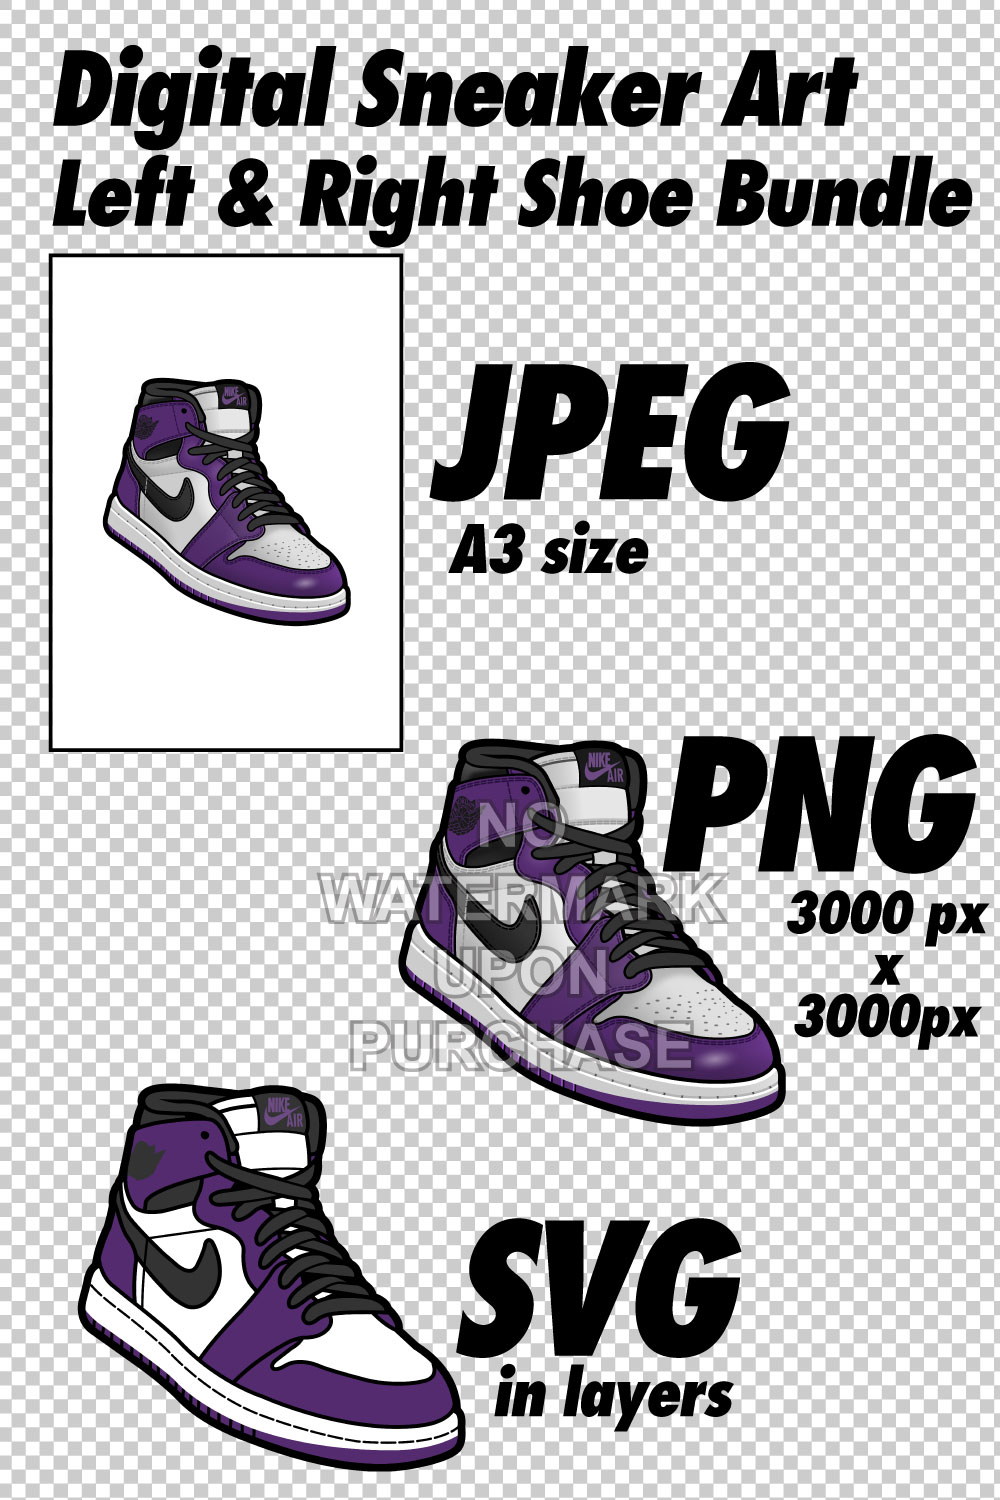 Air Jordan 1 Court Purple JPEG PNG SVG Sneaker Art right & left shoe bundle pinterest preview image.